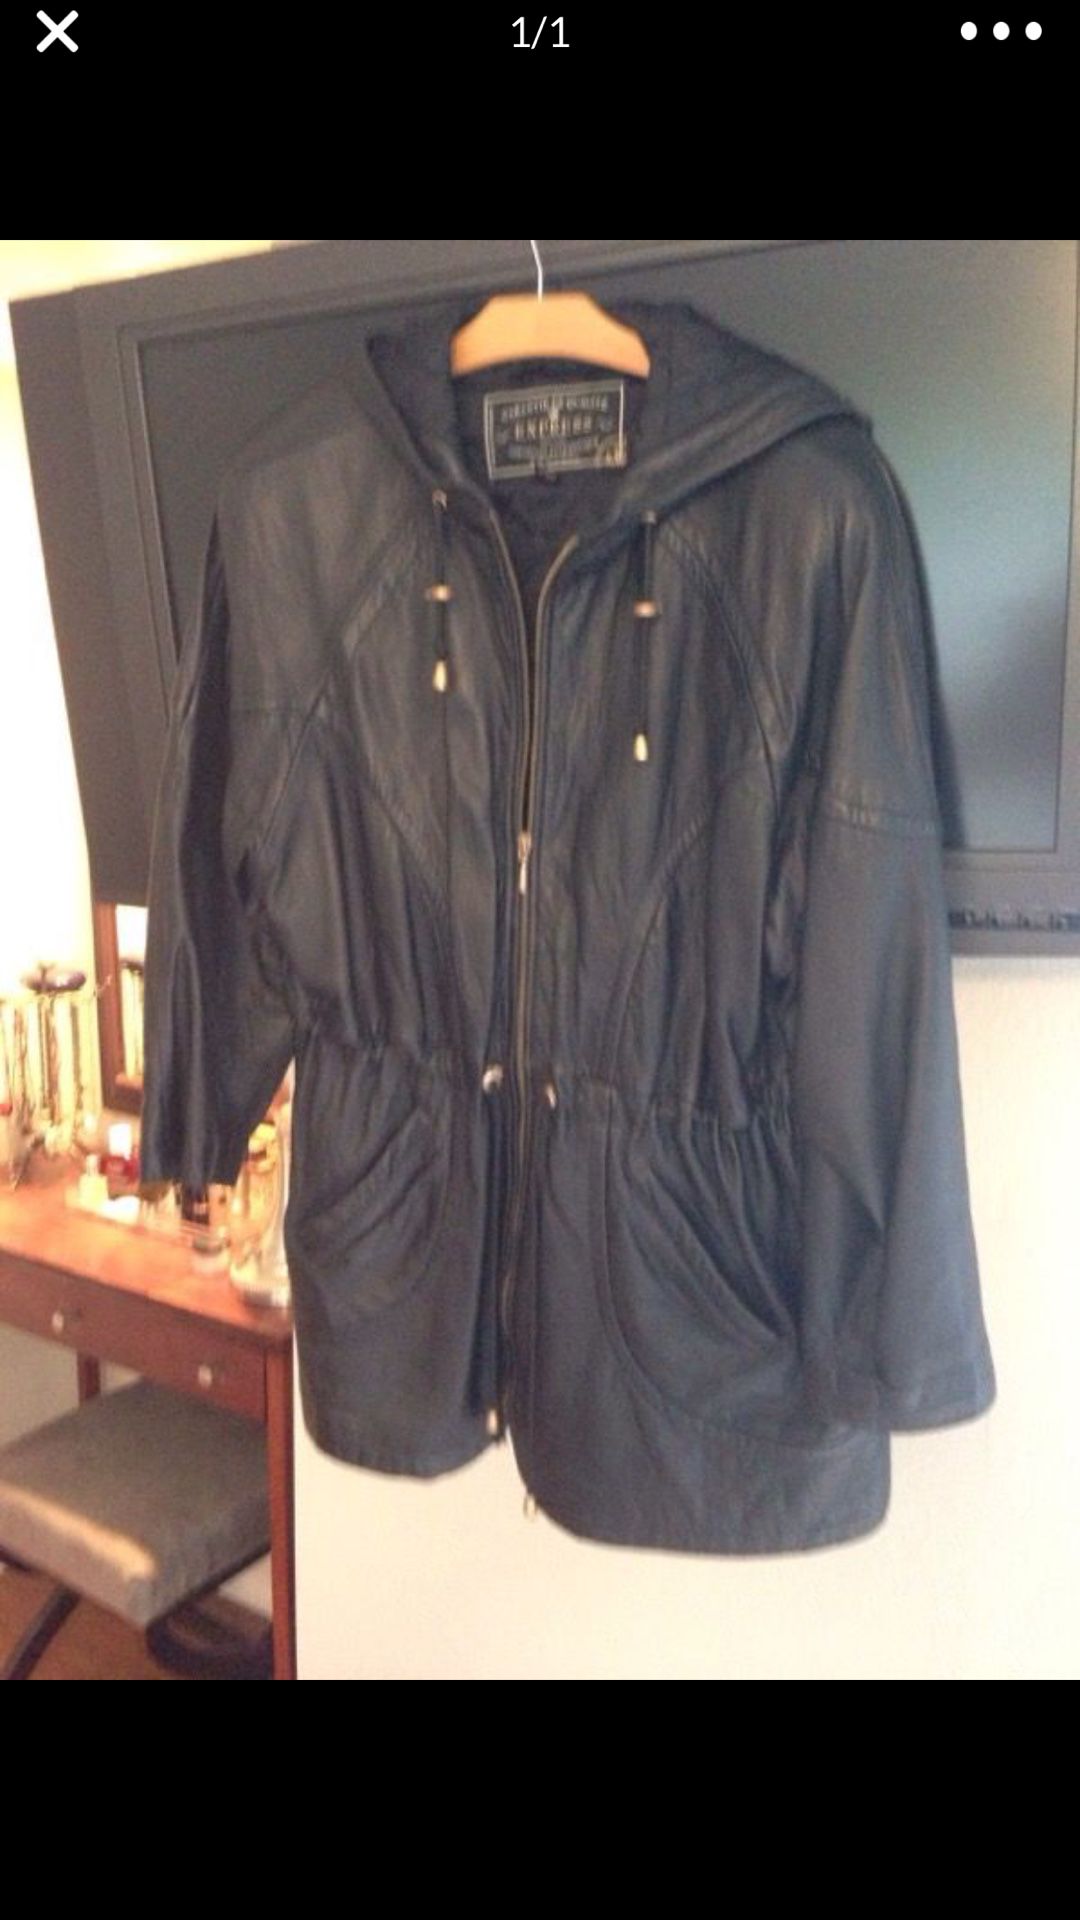 Express leather jacket